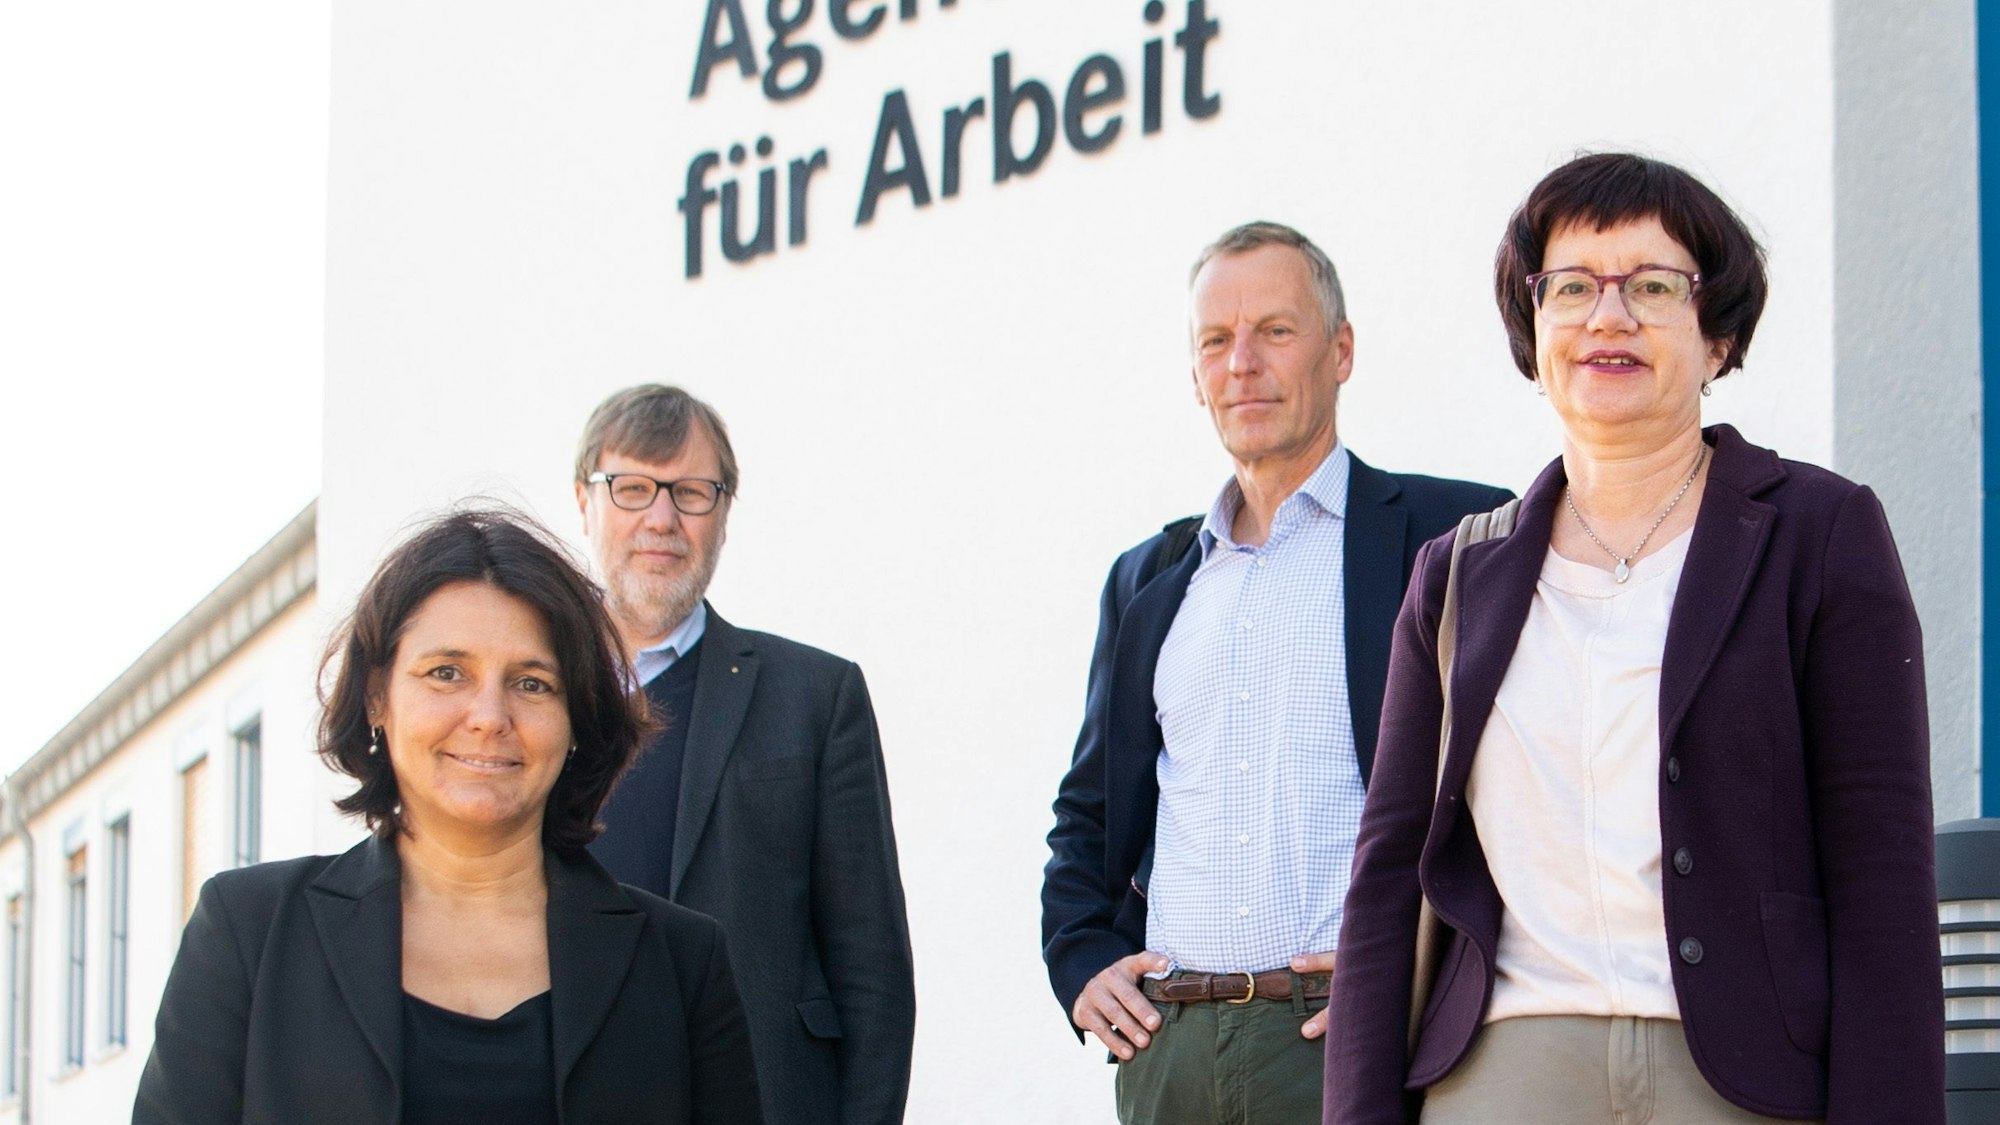 Anja Daub, Uwe Günther, Georg Stoffels und Waltraud Gräfen posieren für ein Foto